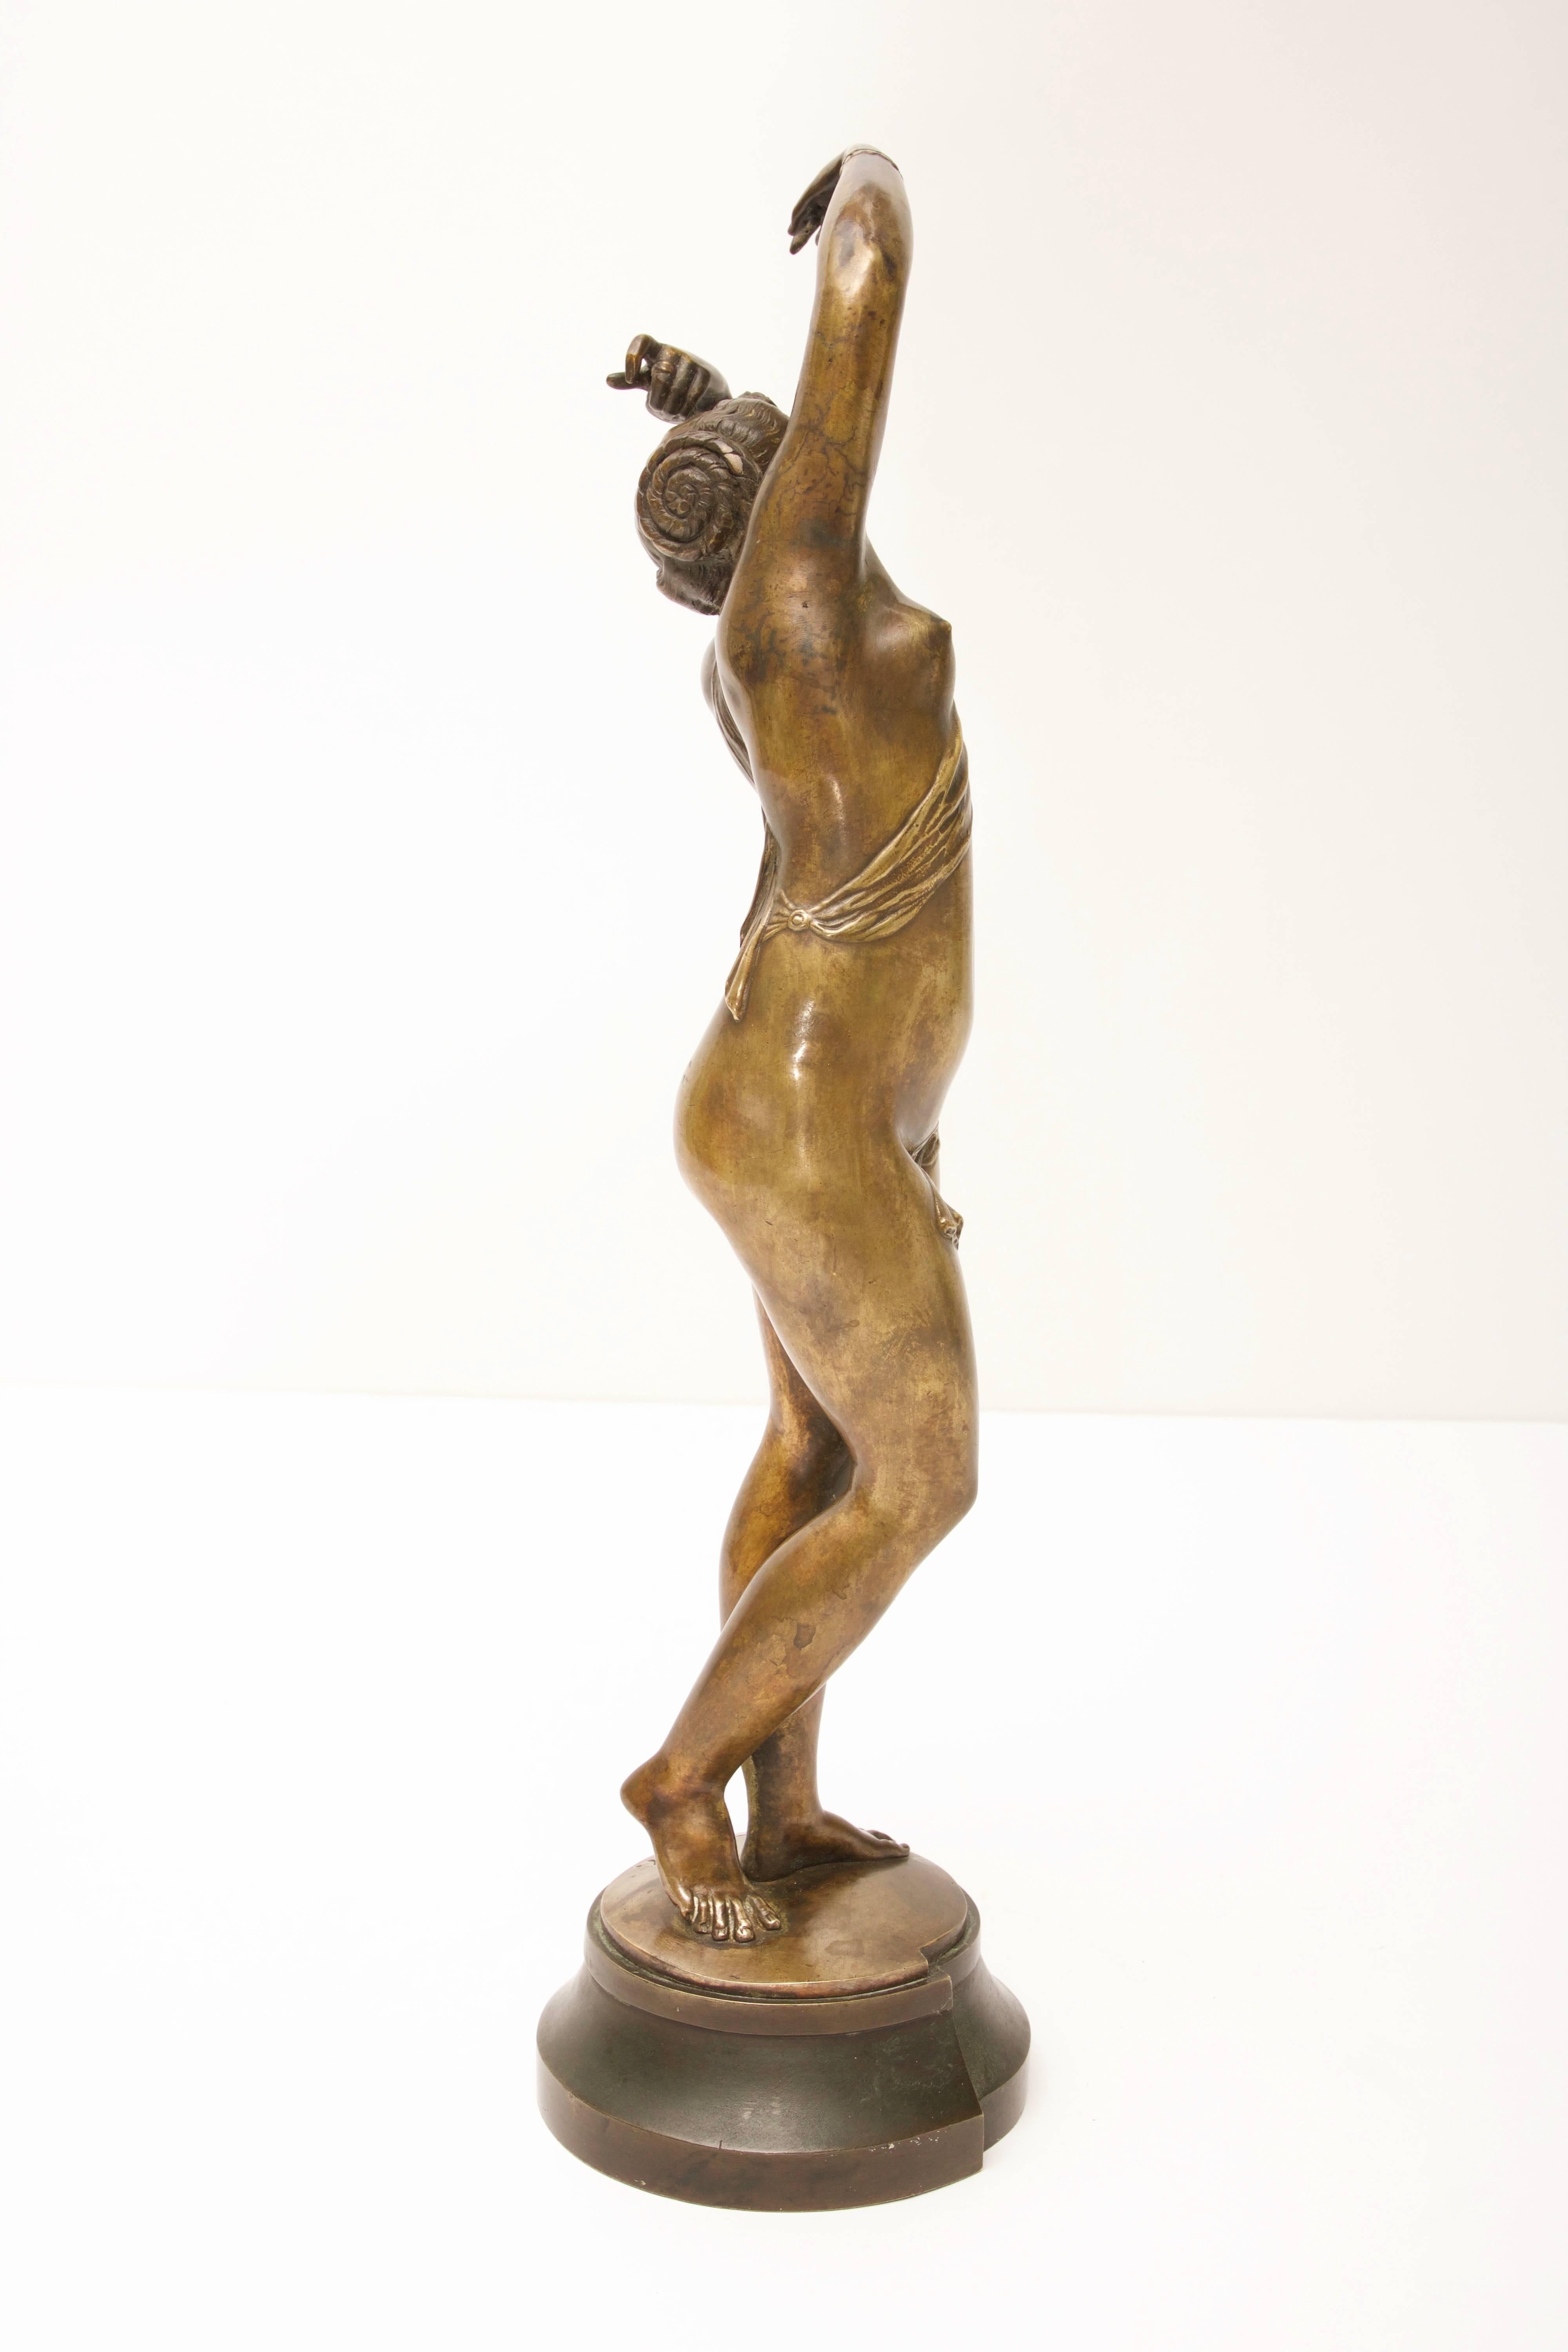 French Epoch Art Nouveau Bronze Sculpture, Spanish Dancer by Louis Kley